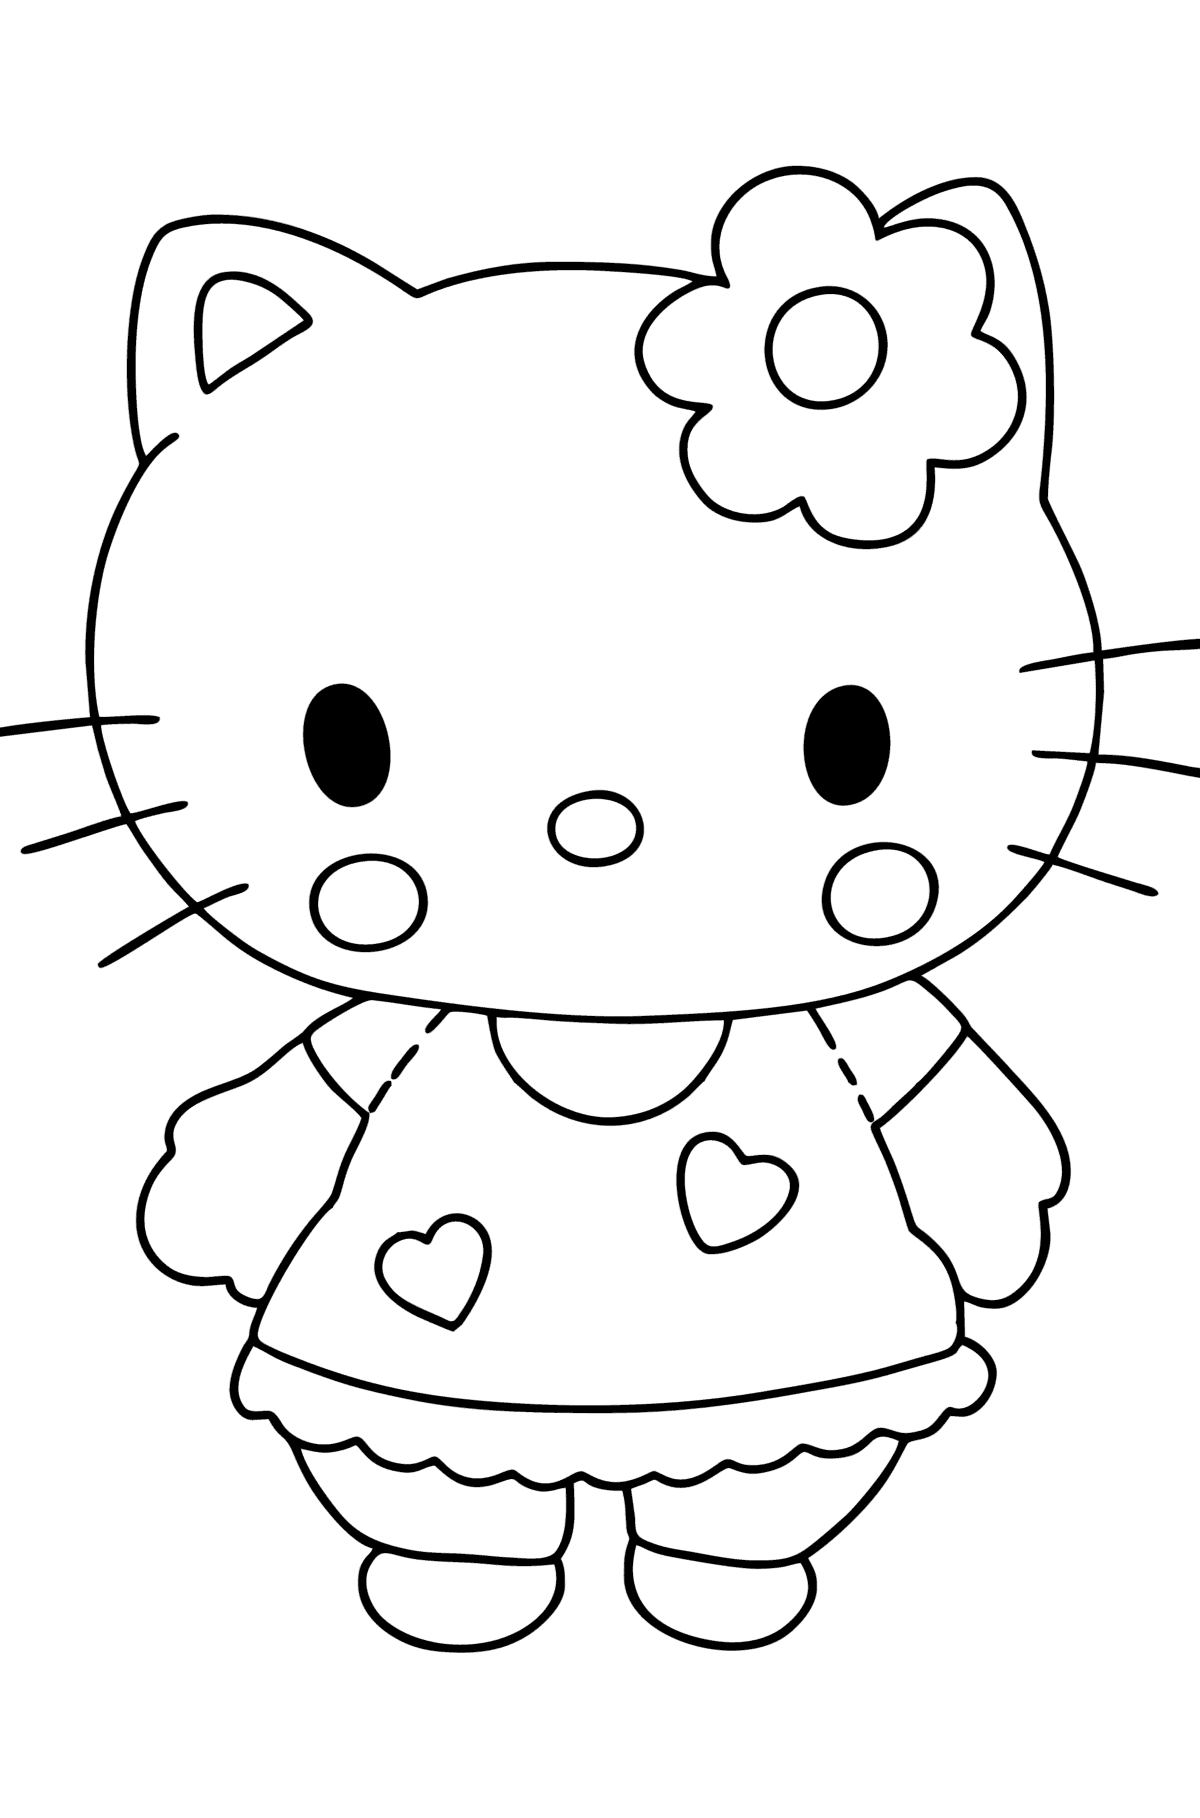 Ausmalbild Hello Kitty - Malvorlagen für Kinder